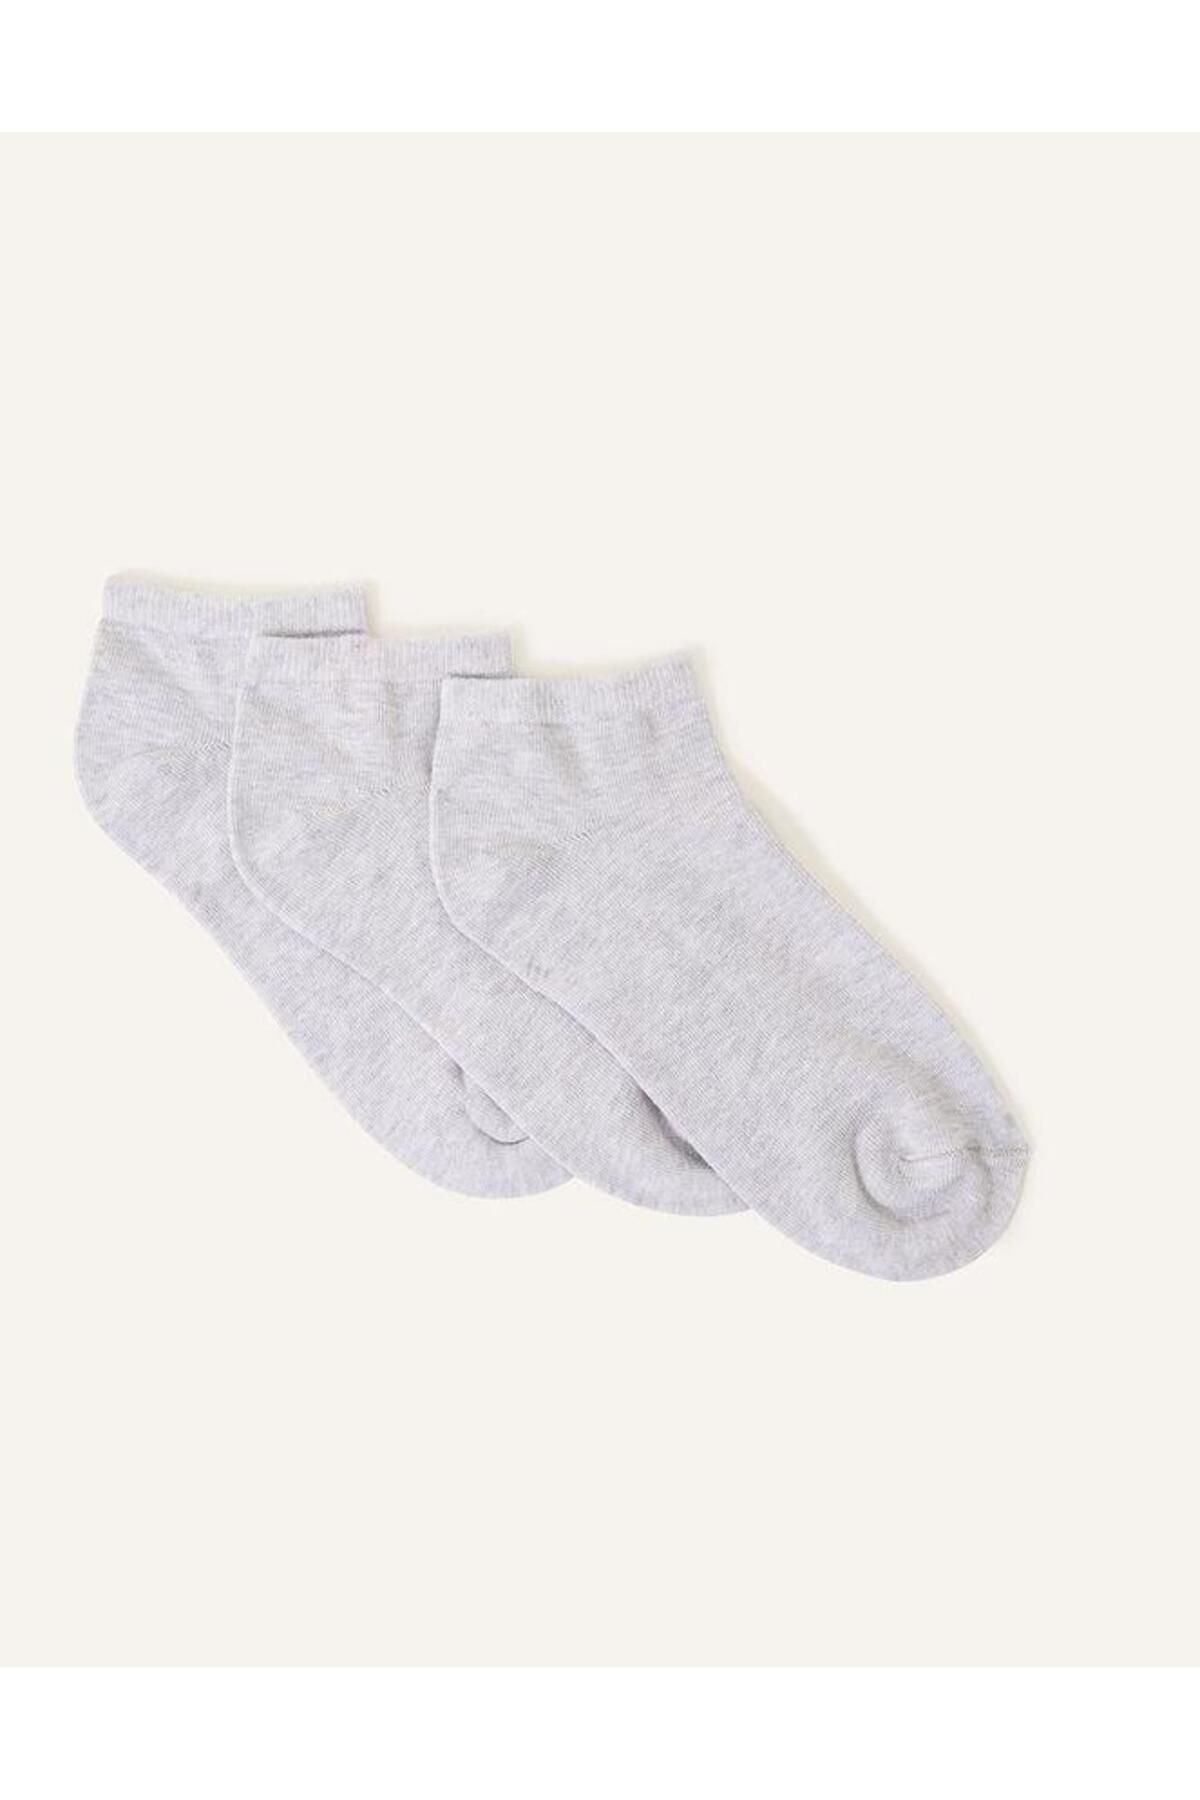 Accessorize Süper Soft Pamuk Spor Çorap